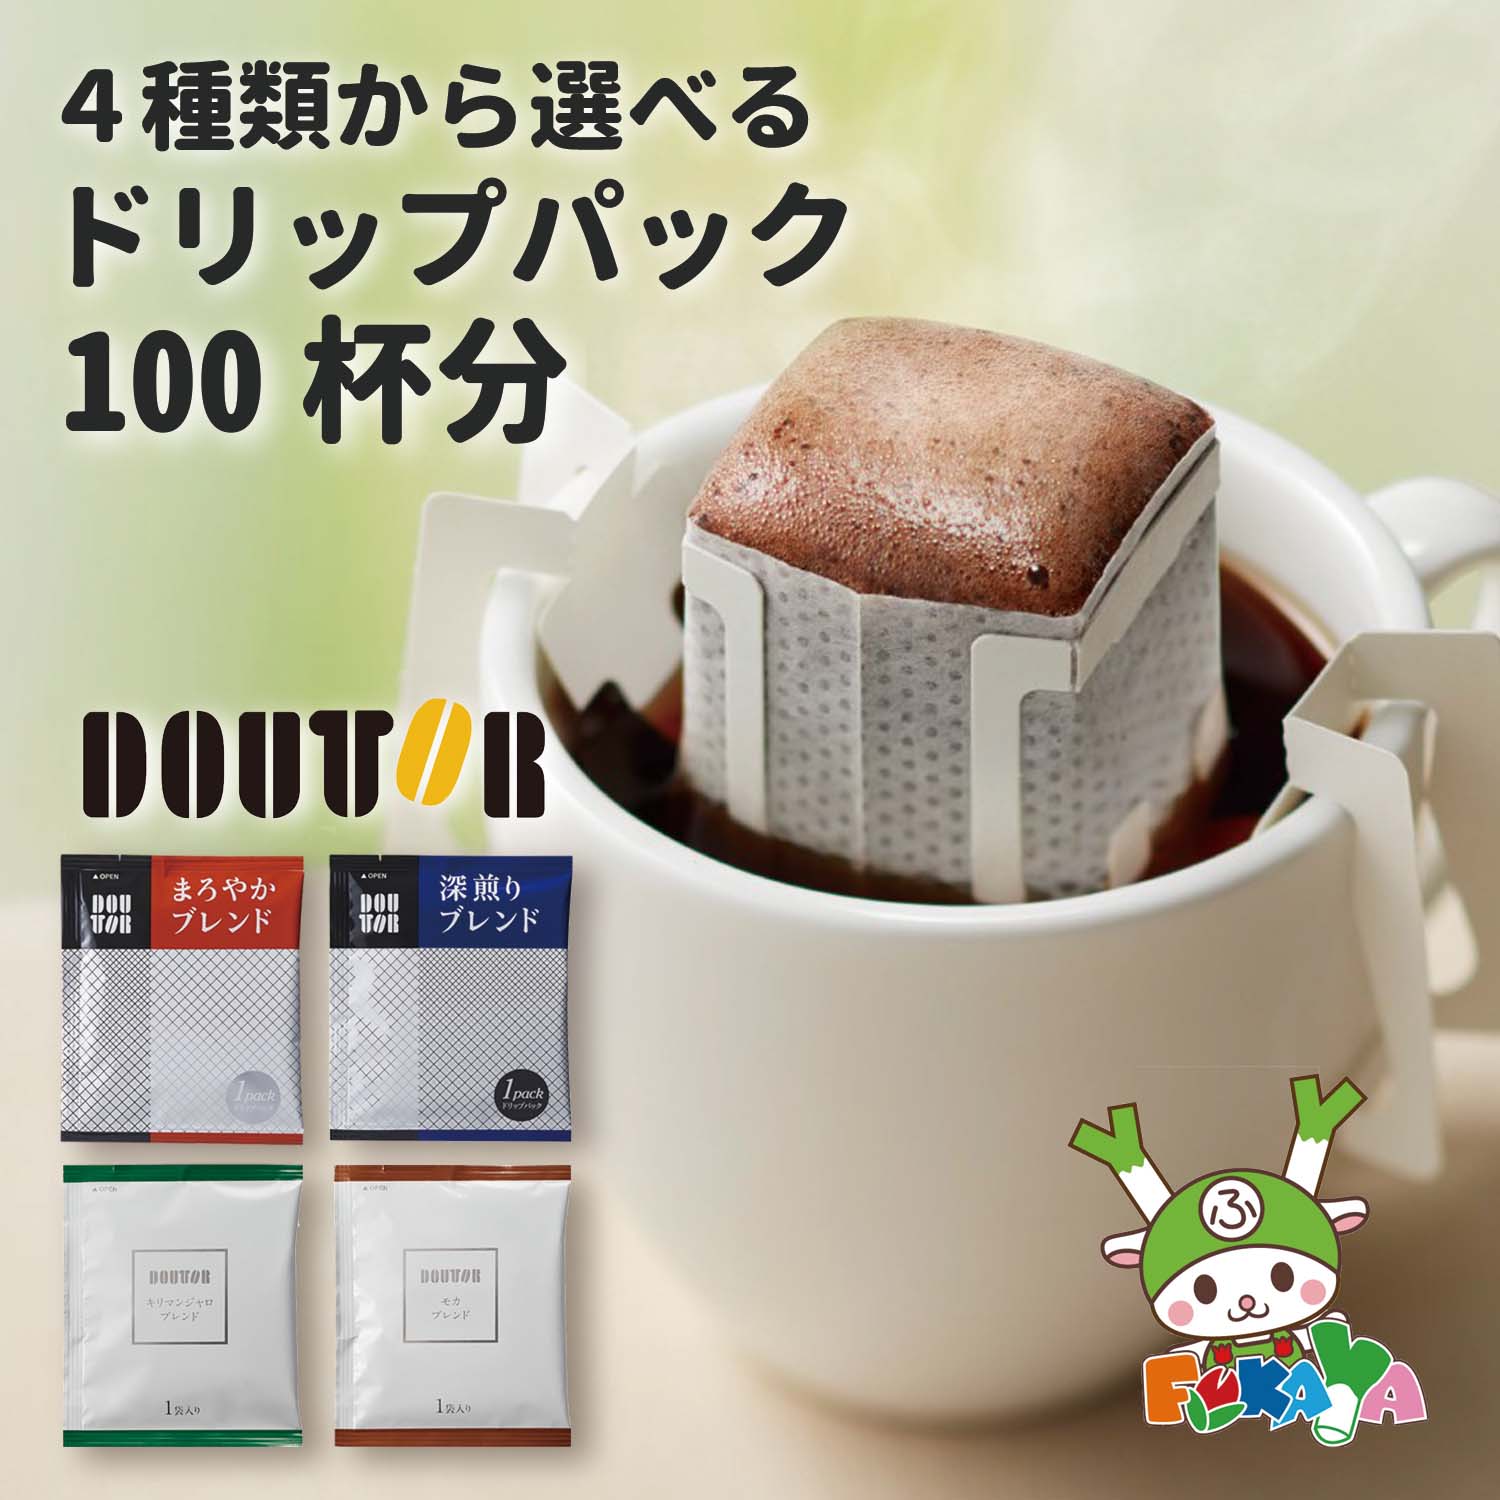 （4種から選べる）ドトールコーヒー ドリップパック 100p 送料無料 ドトール ドリップ ドリップコーヒー コーヒー 100p 最安値 最安値に挑戦 ドリップコーヒー おすすめ